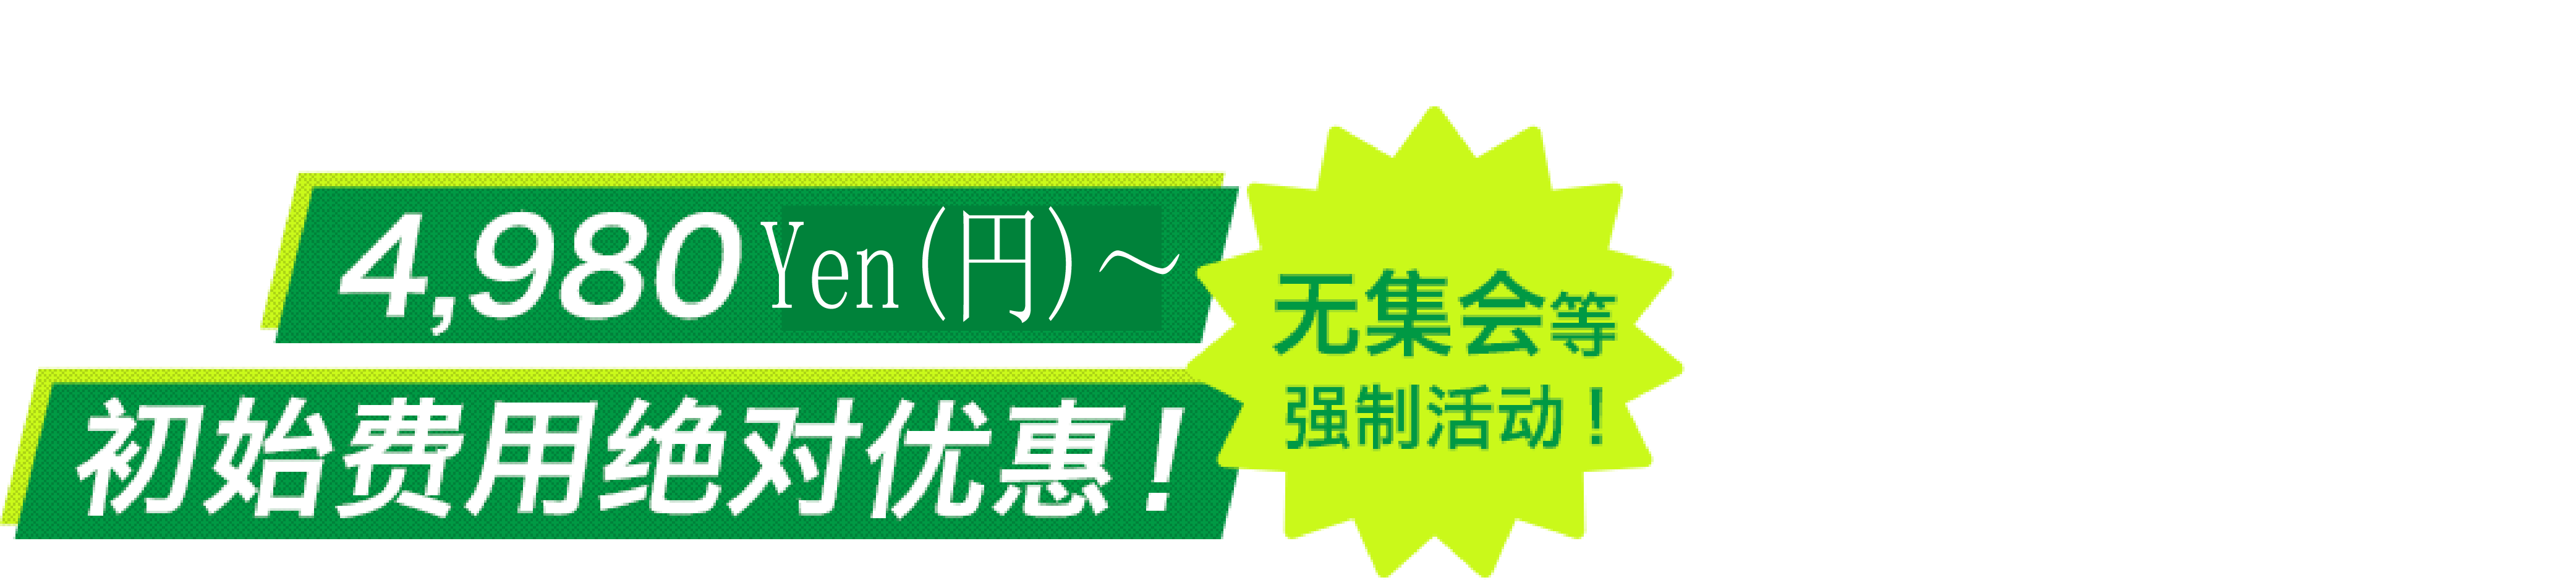 最快当天发行工伤保险编号！每月4,980Yen(円)～　初始费用绝对优惠！